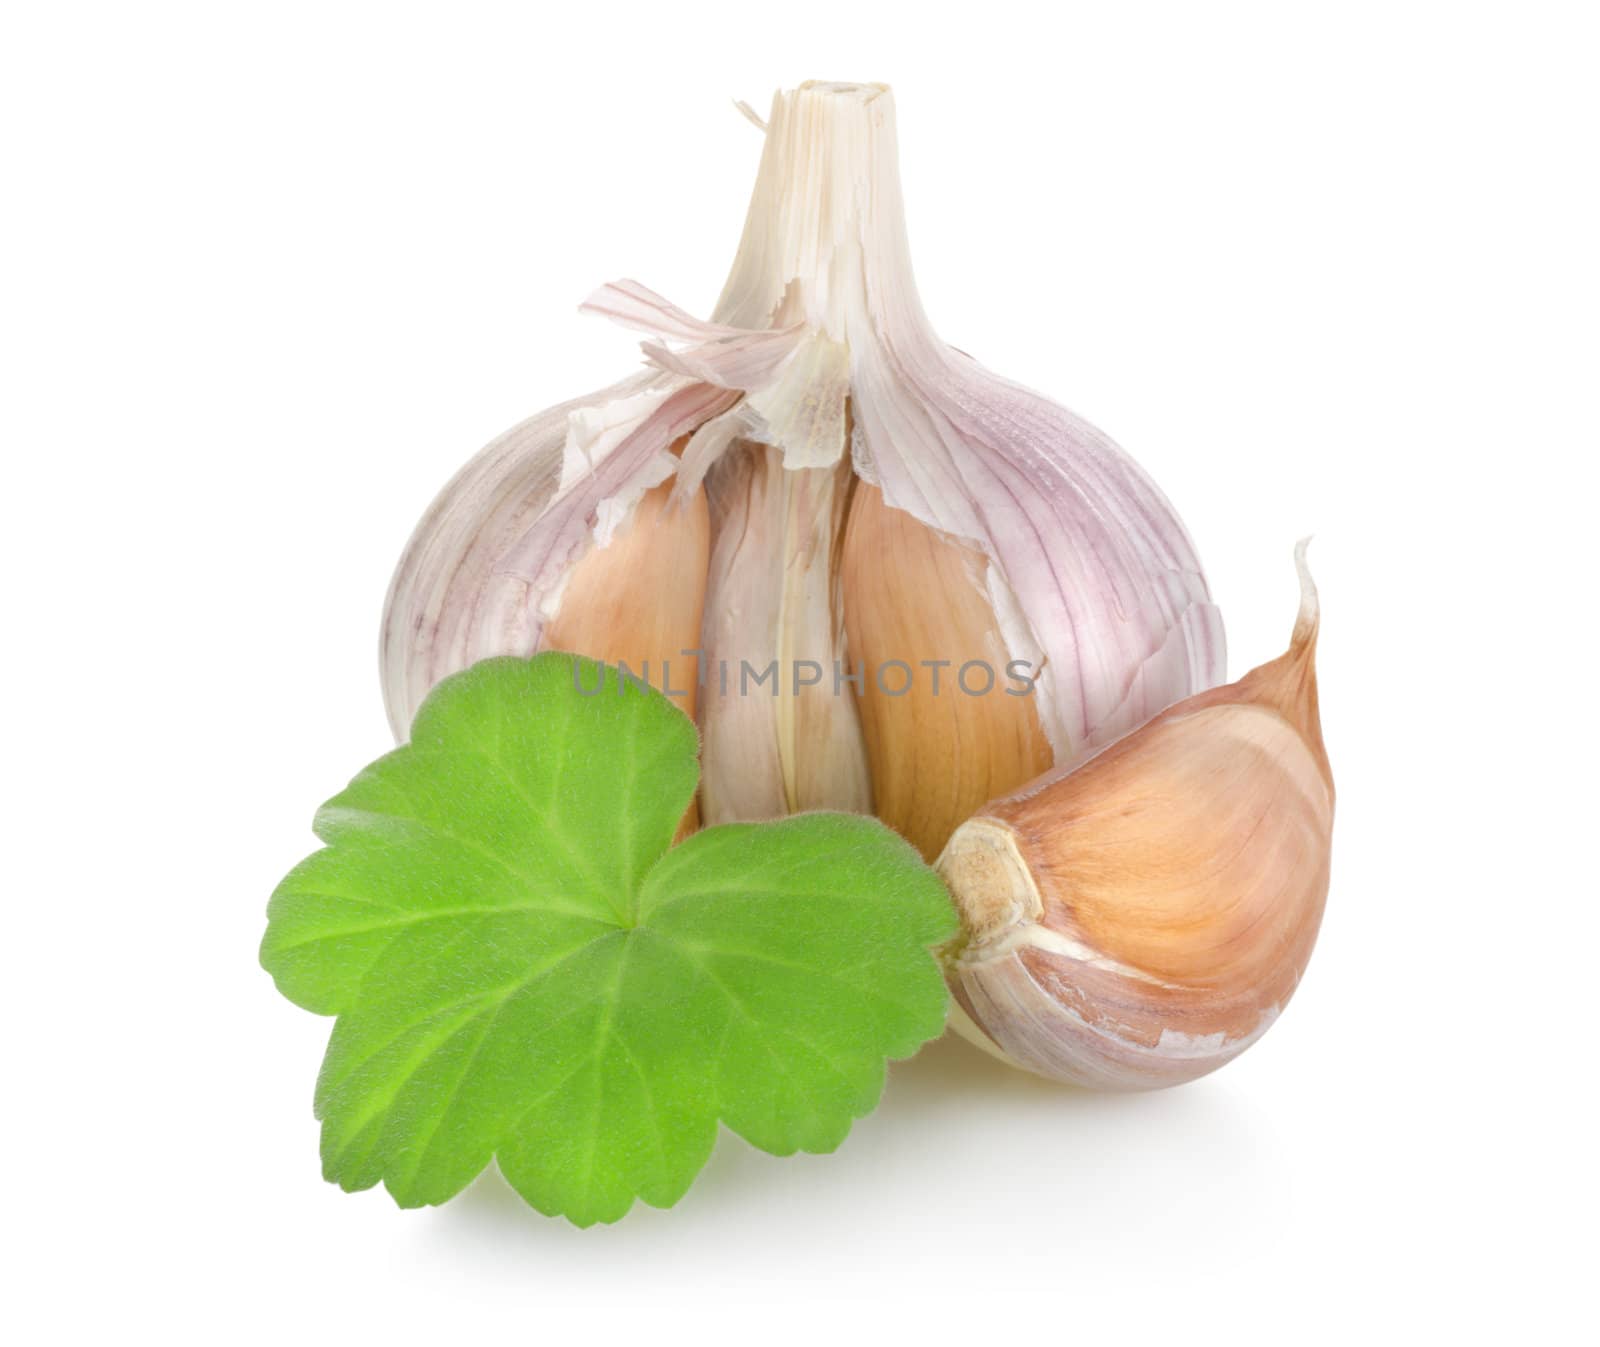 Raw garlic by Givaga